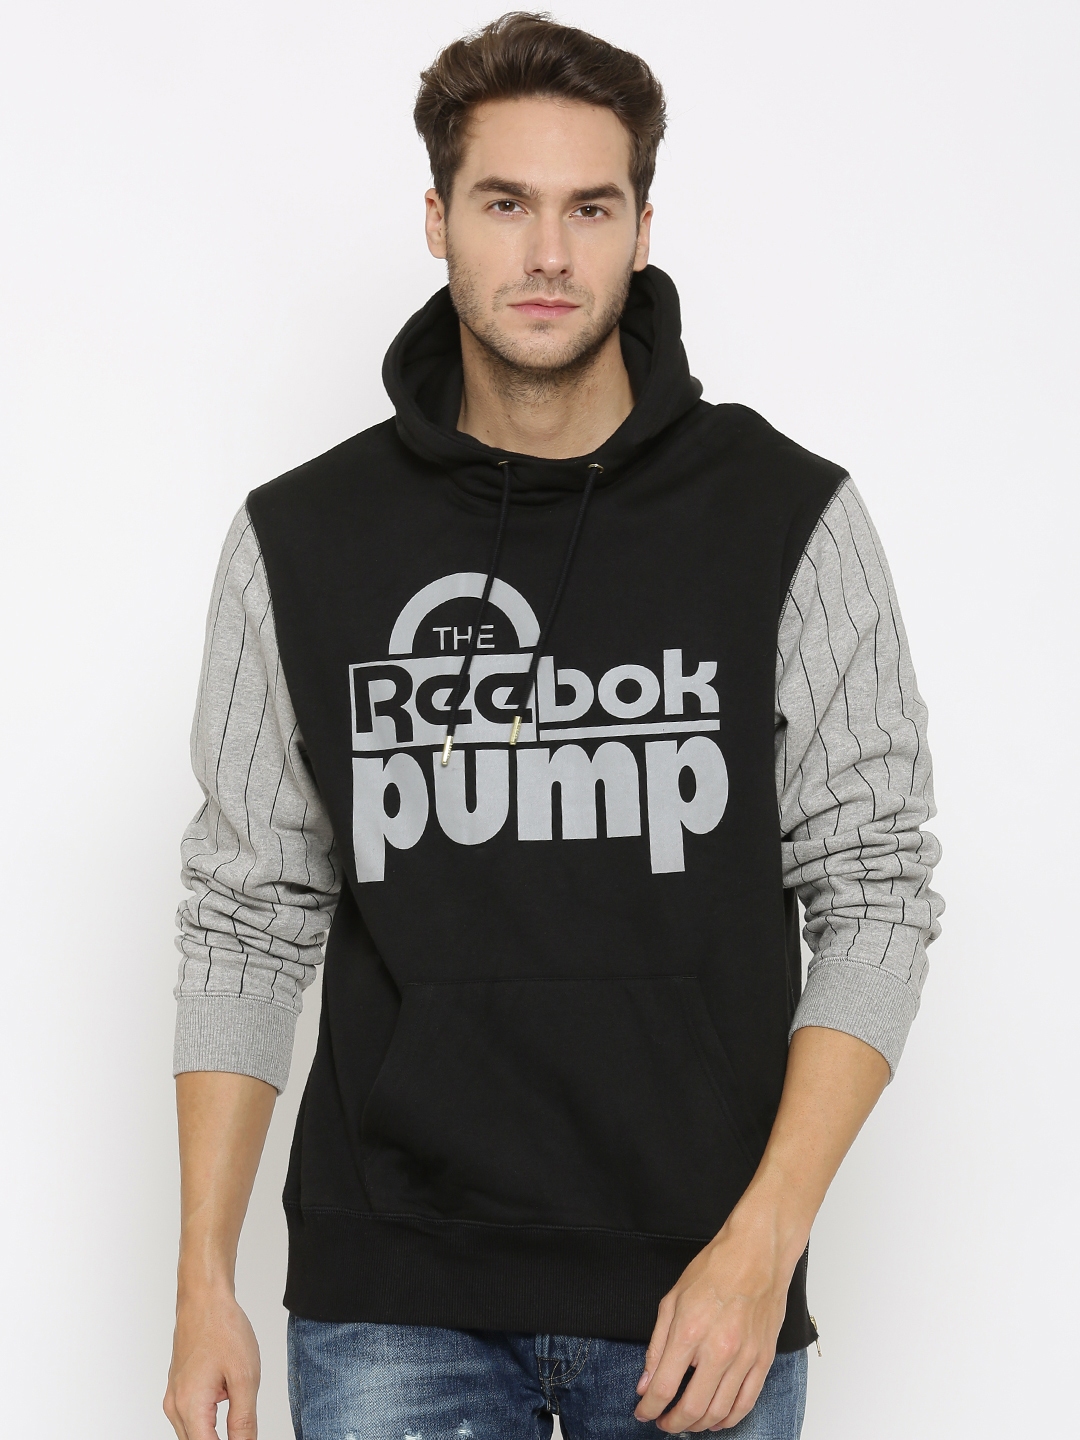 Buy reebok pump hoodie,reebok womens 